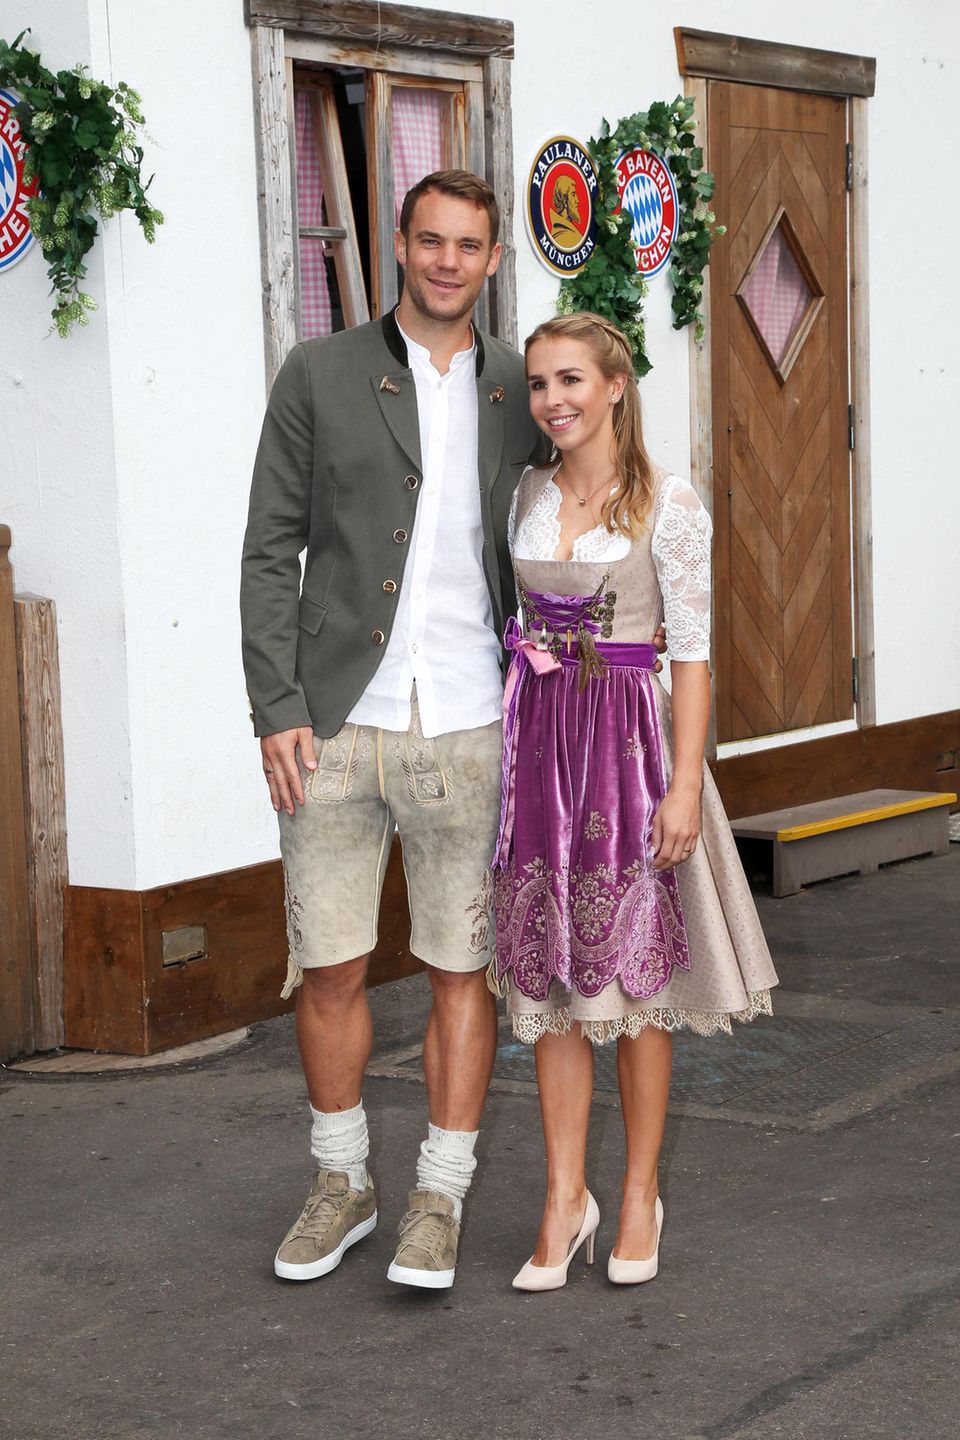 Auch Torwart Manuel Neuer und seine Frau Nina dürfen bei dem Besuch des FC Bayern Münchens auf der Wiesn nicht fehlen. Das Paar hat seine Looks farblich aufeinander abgestimmt. Lisa Neuer trägt ein beigefarbenes, edles Dirndl mit lilafarbener Samt-Schürze, Manuel trägt eine Lederhose in einem ähnlichen Beige-Ton. 